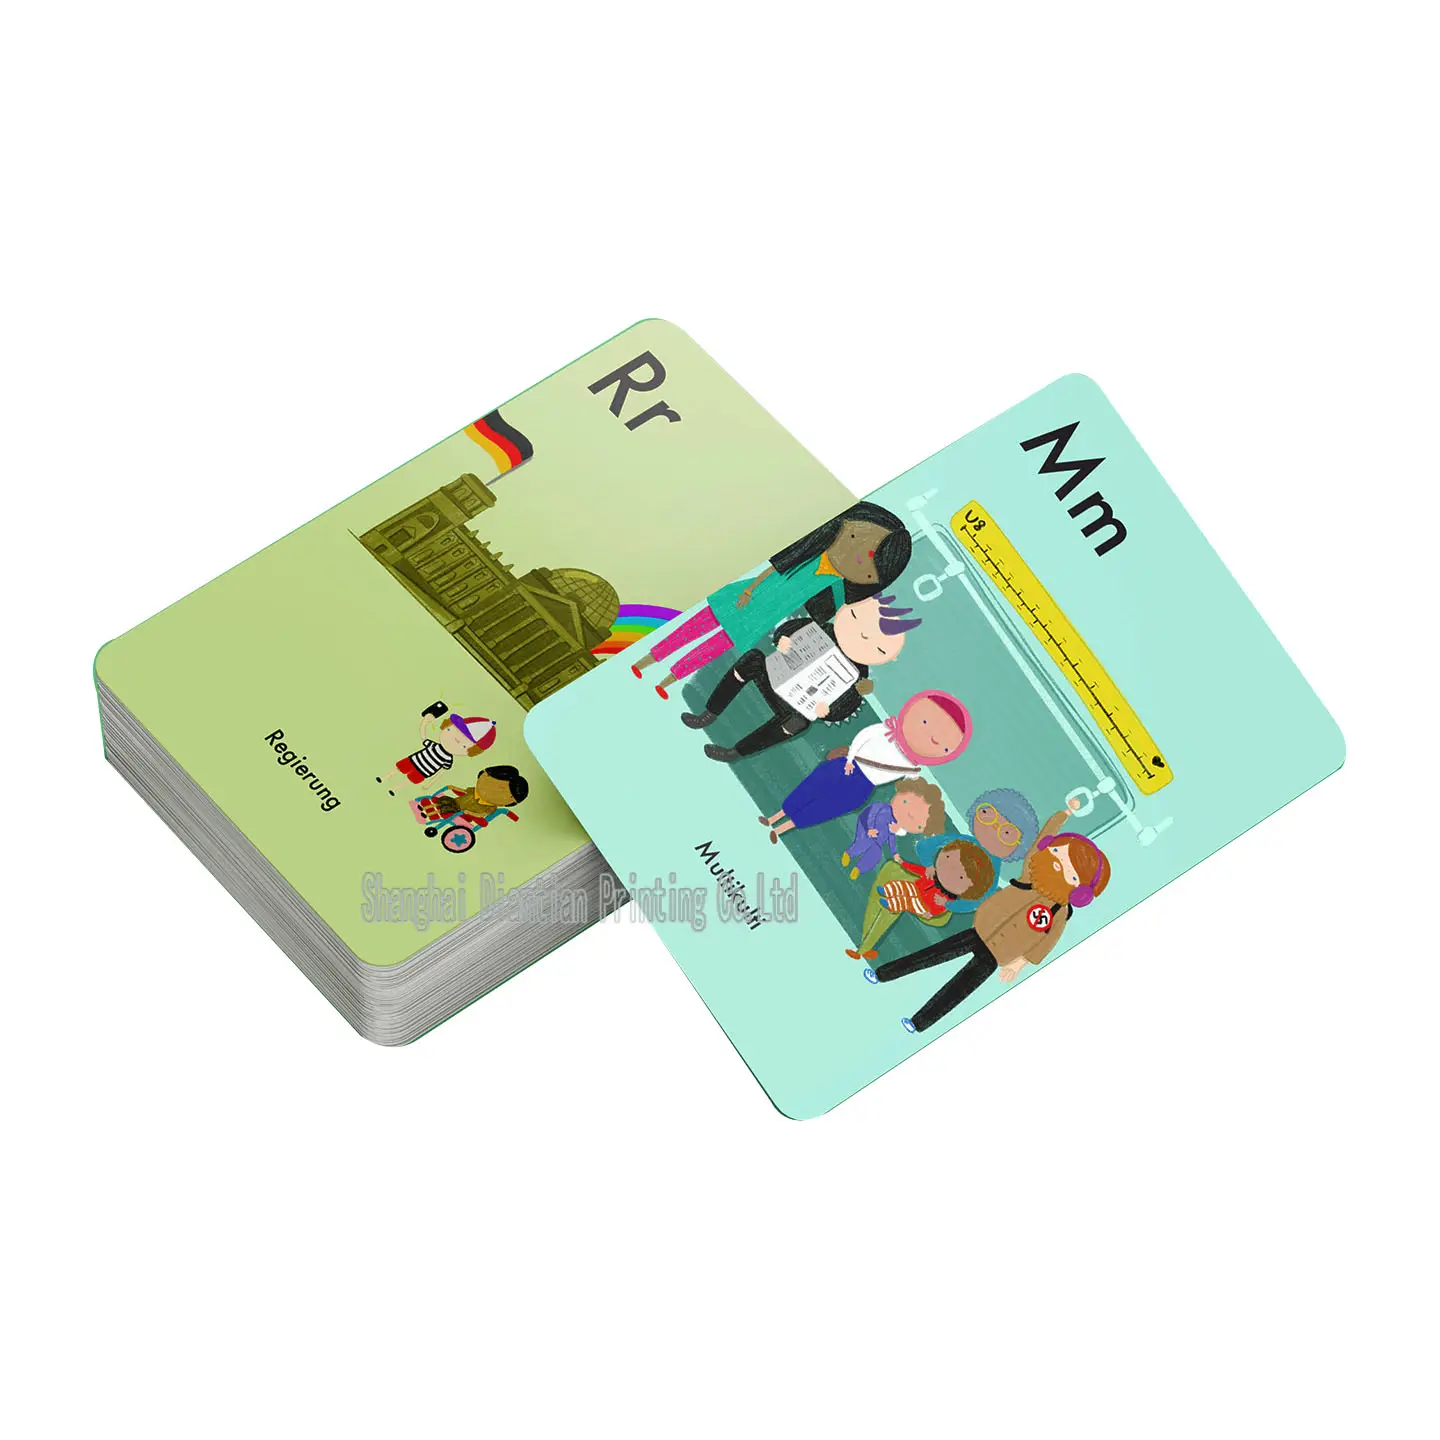 Cartes flash/jeux de cartes cognitives pour enfants, prix d'usine